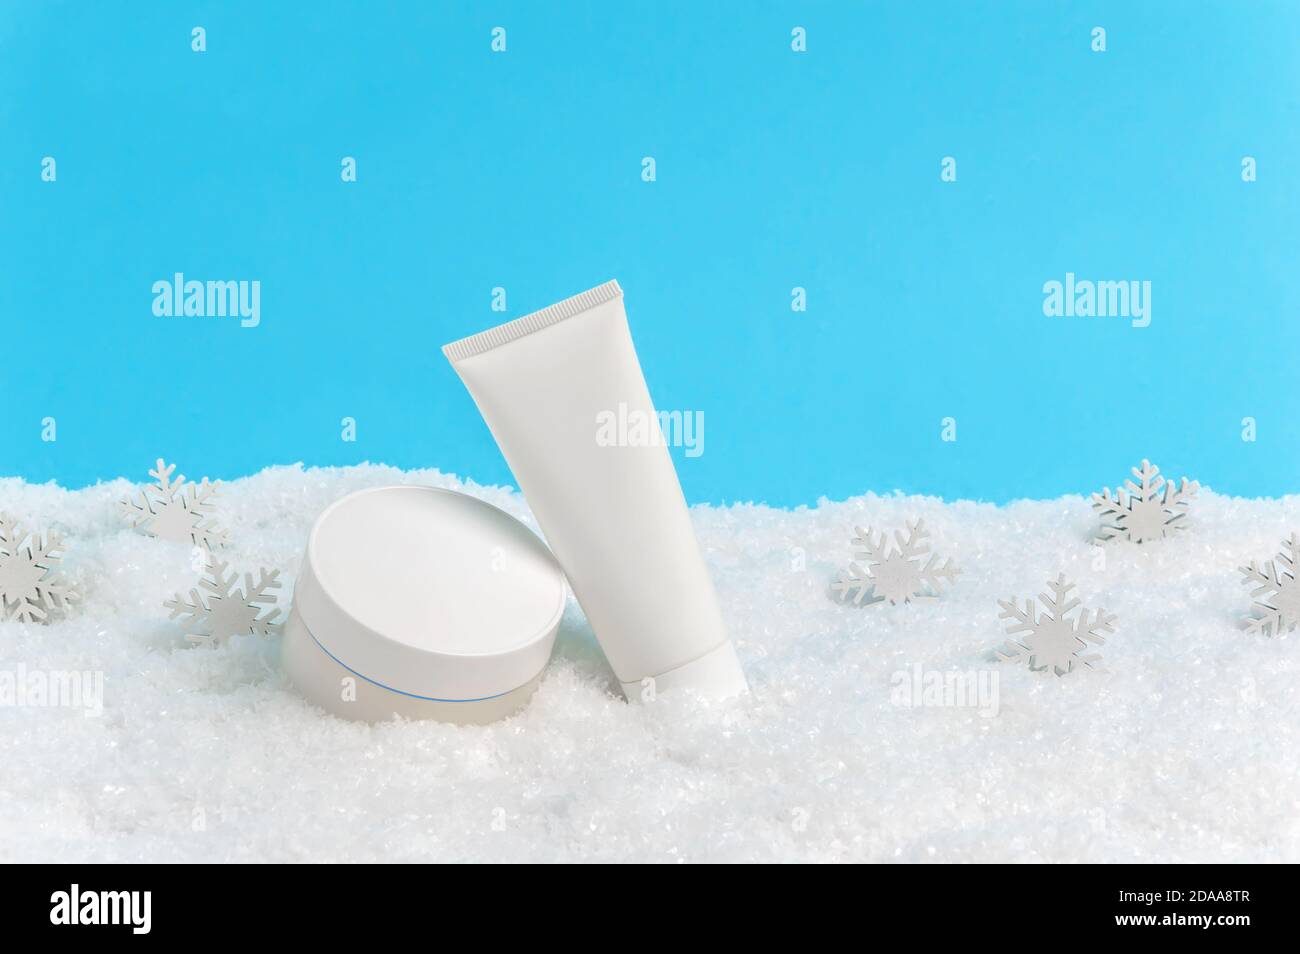 Gesichtscreme Glas und Handcreme oder Körperlotion Tube in Schnee und Schneeflocken auf blauem Hintergrund. Winter Hautpflege Kosmetik-Produkte. Saisonal kaltes Wetter Stockfoto